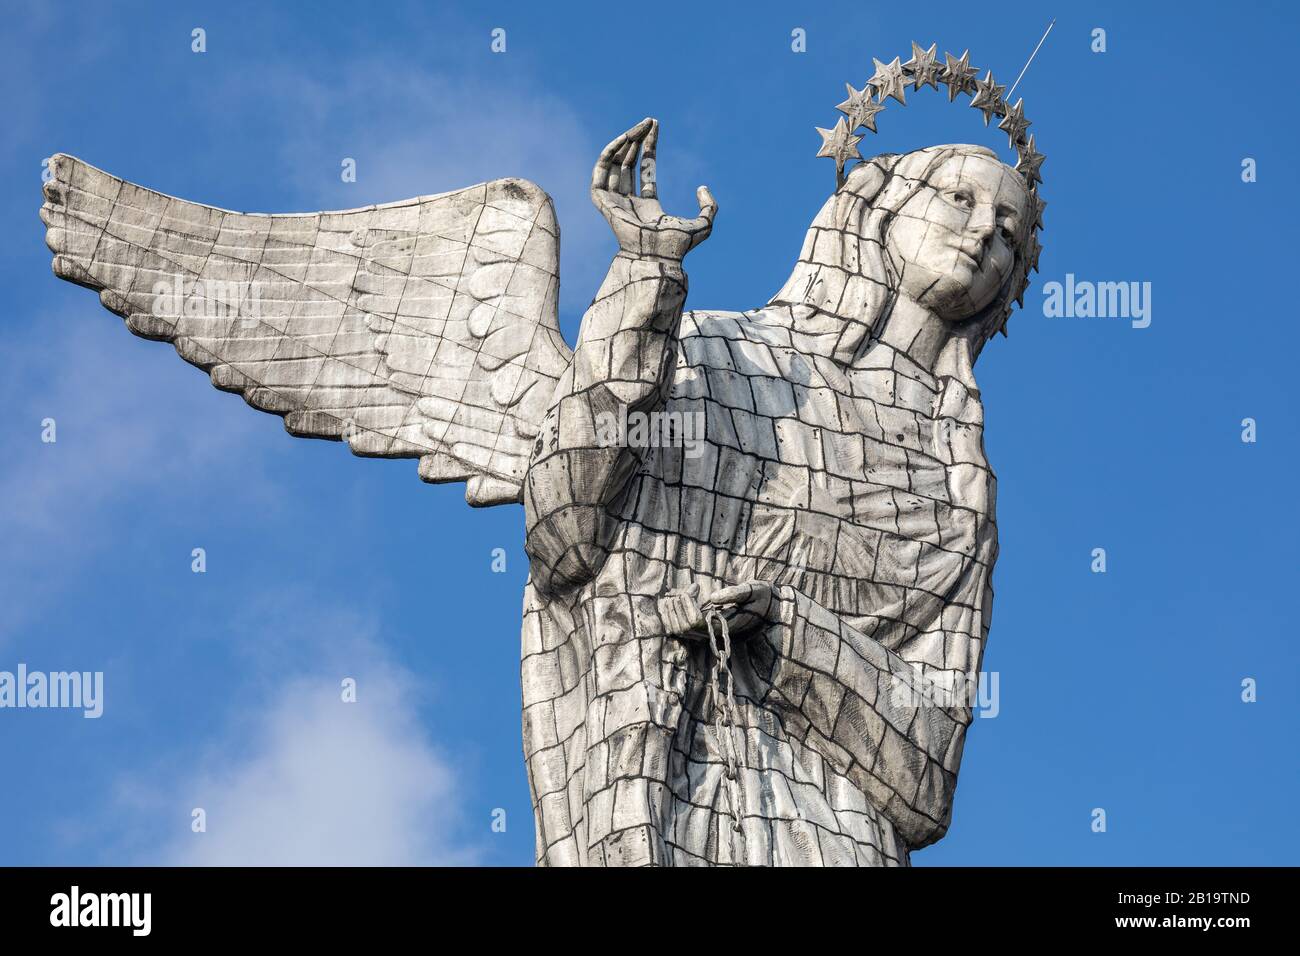 The monument of the Virgen del Panecillo. Quito. Ecuador. South America. Stock Photo